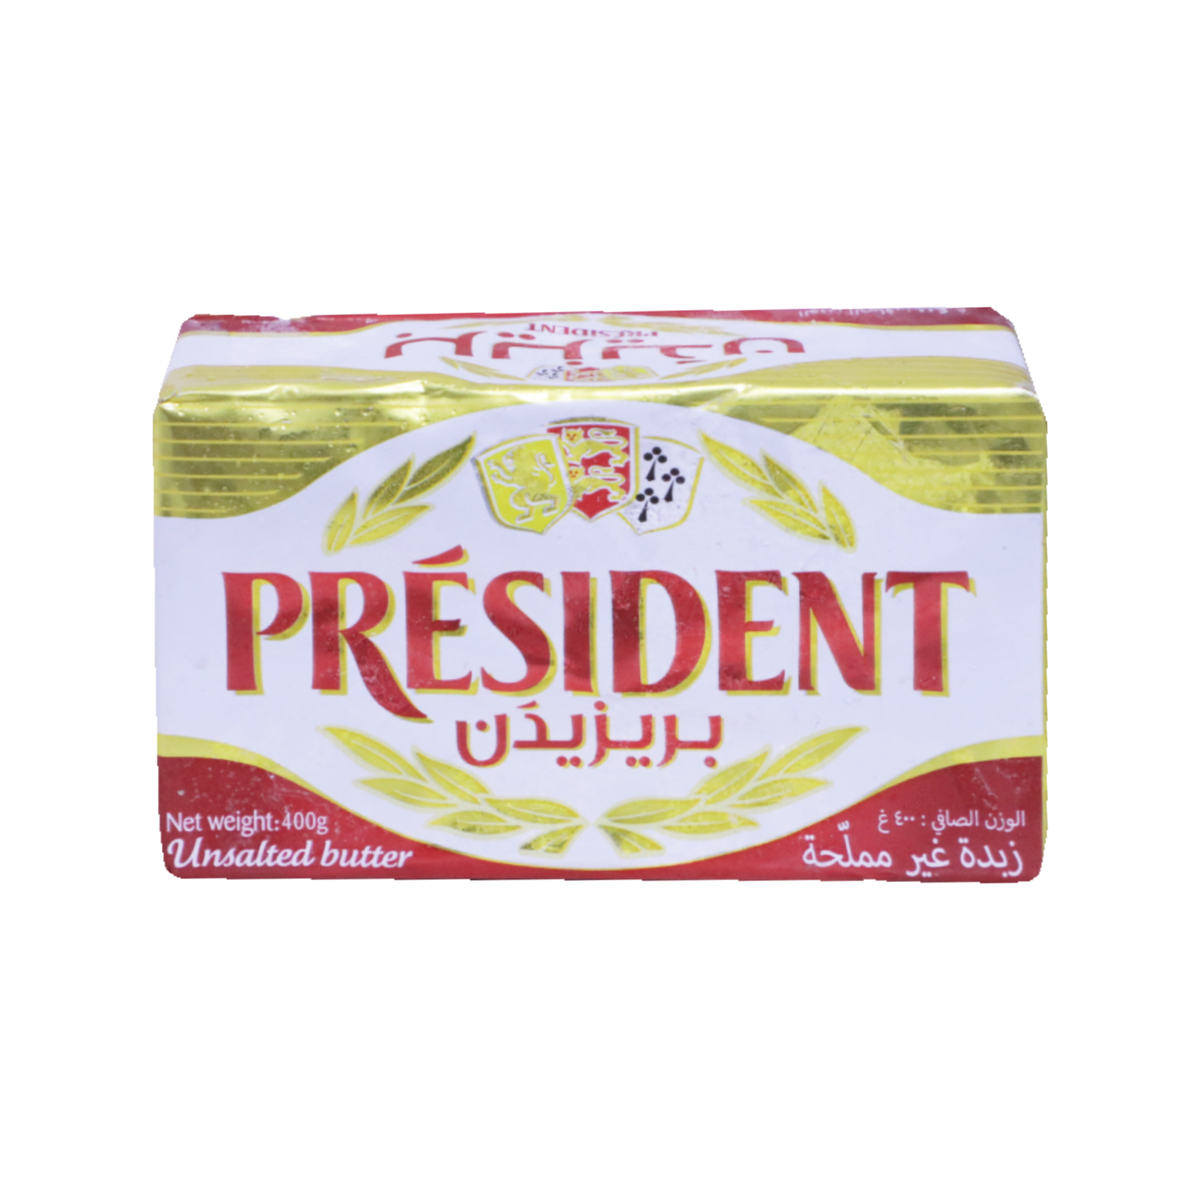 President Unsalted Butter 400g